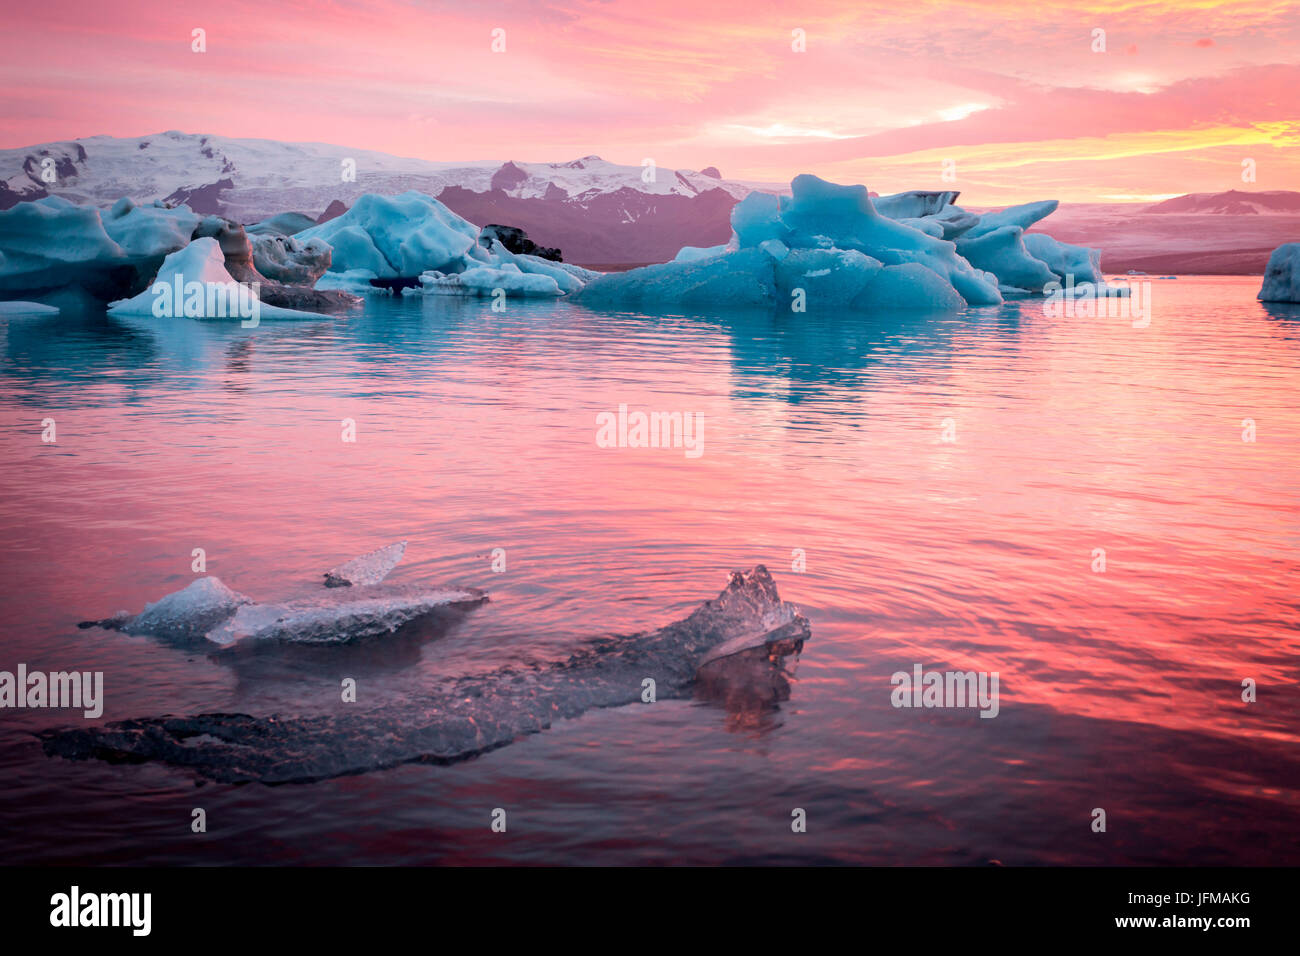 Iceland, Jokulsarlon Glacier Lagoon, icebergs and ice chunk at sunset Stock Photo